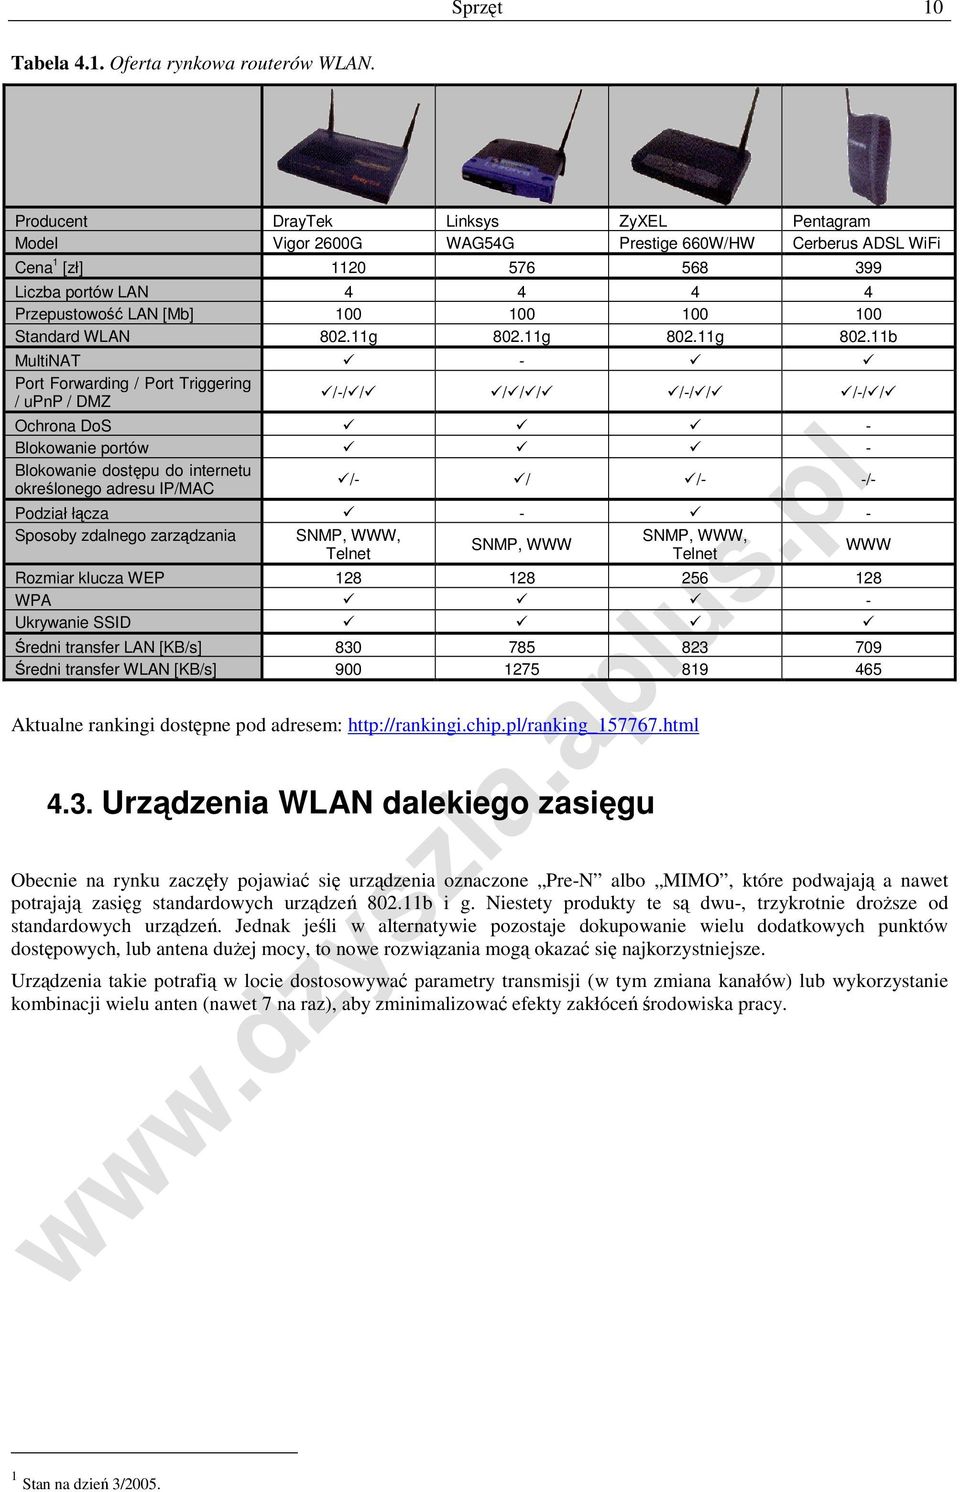 Standard WLAN 802.11g 802.